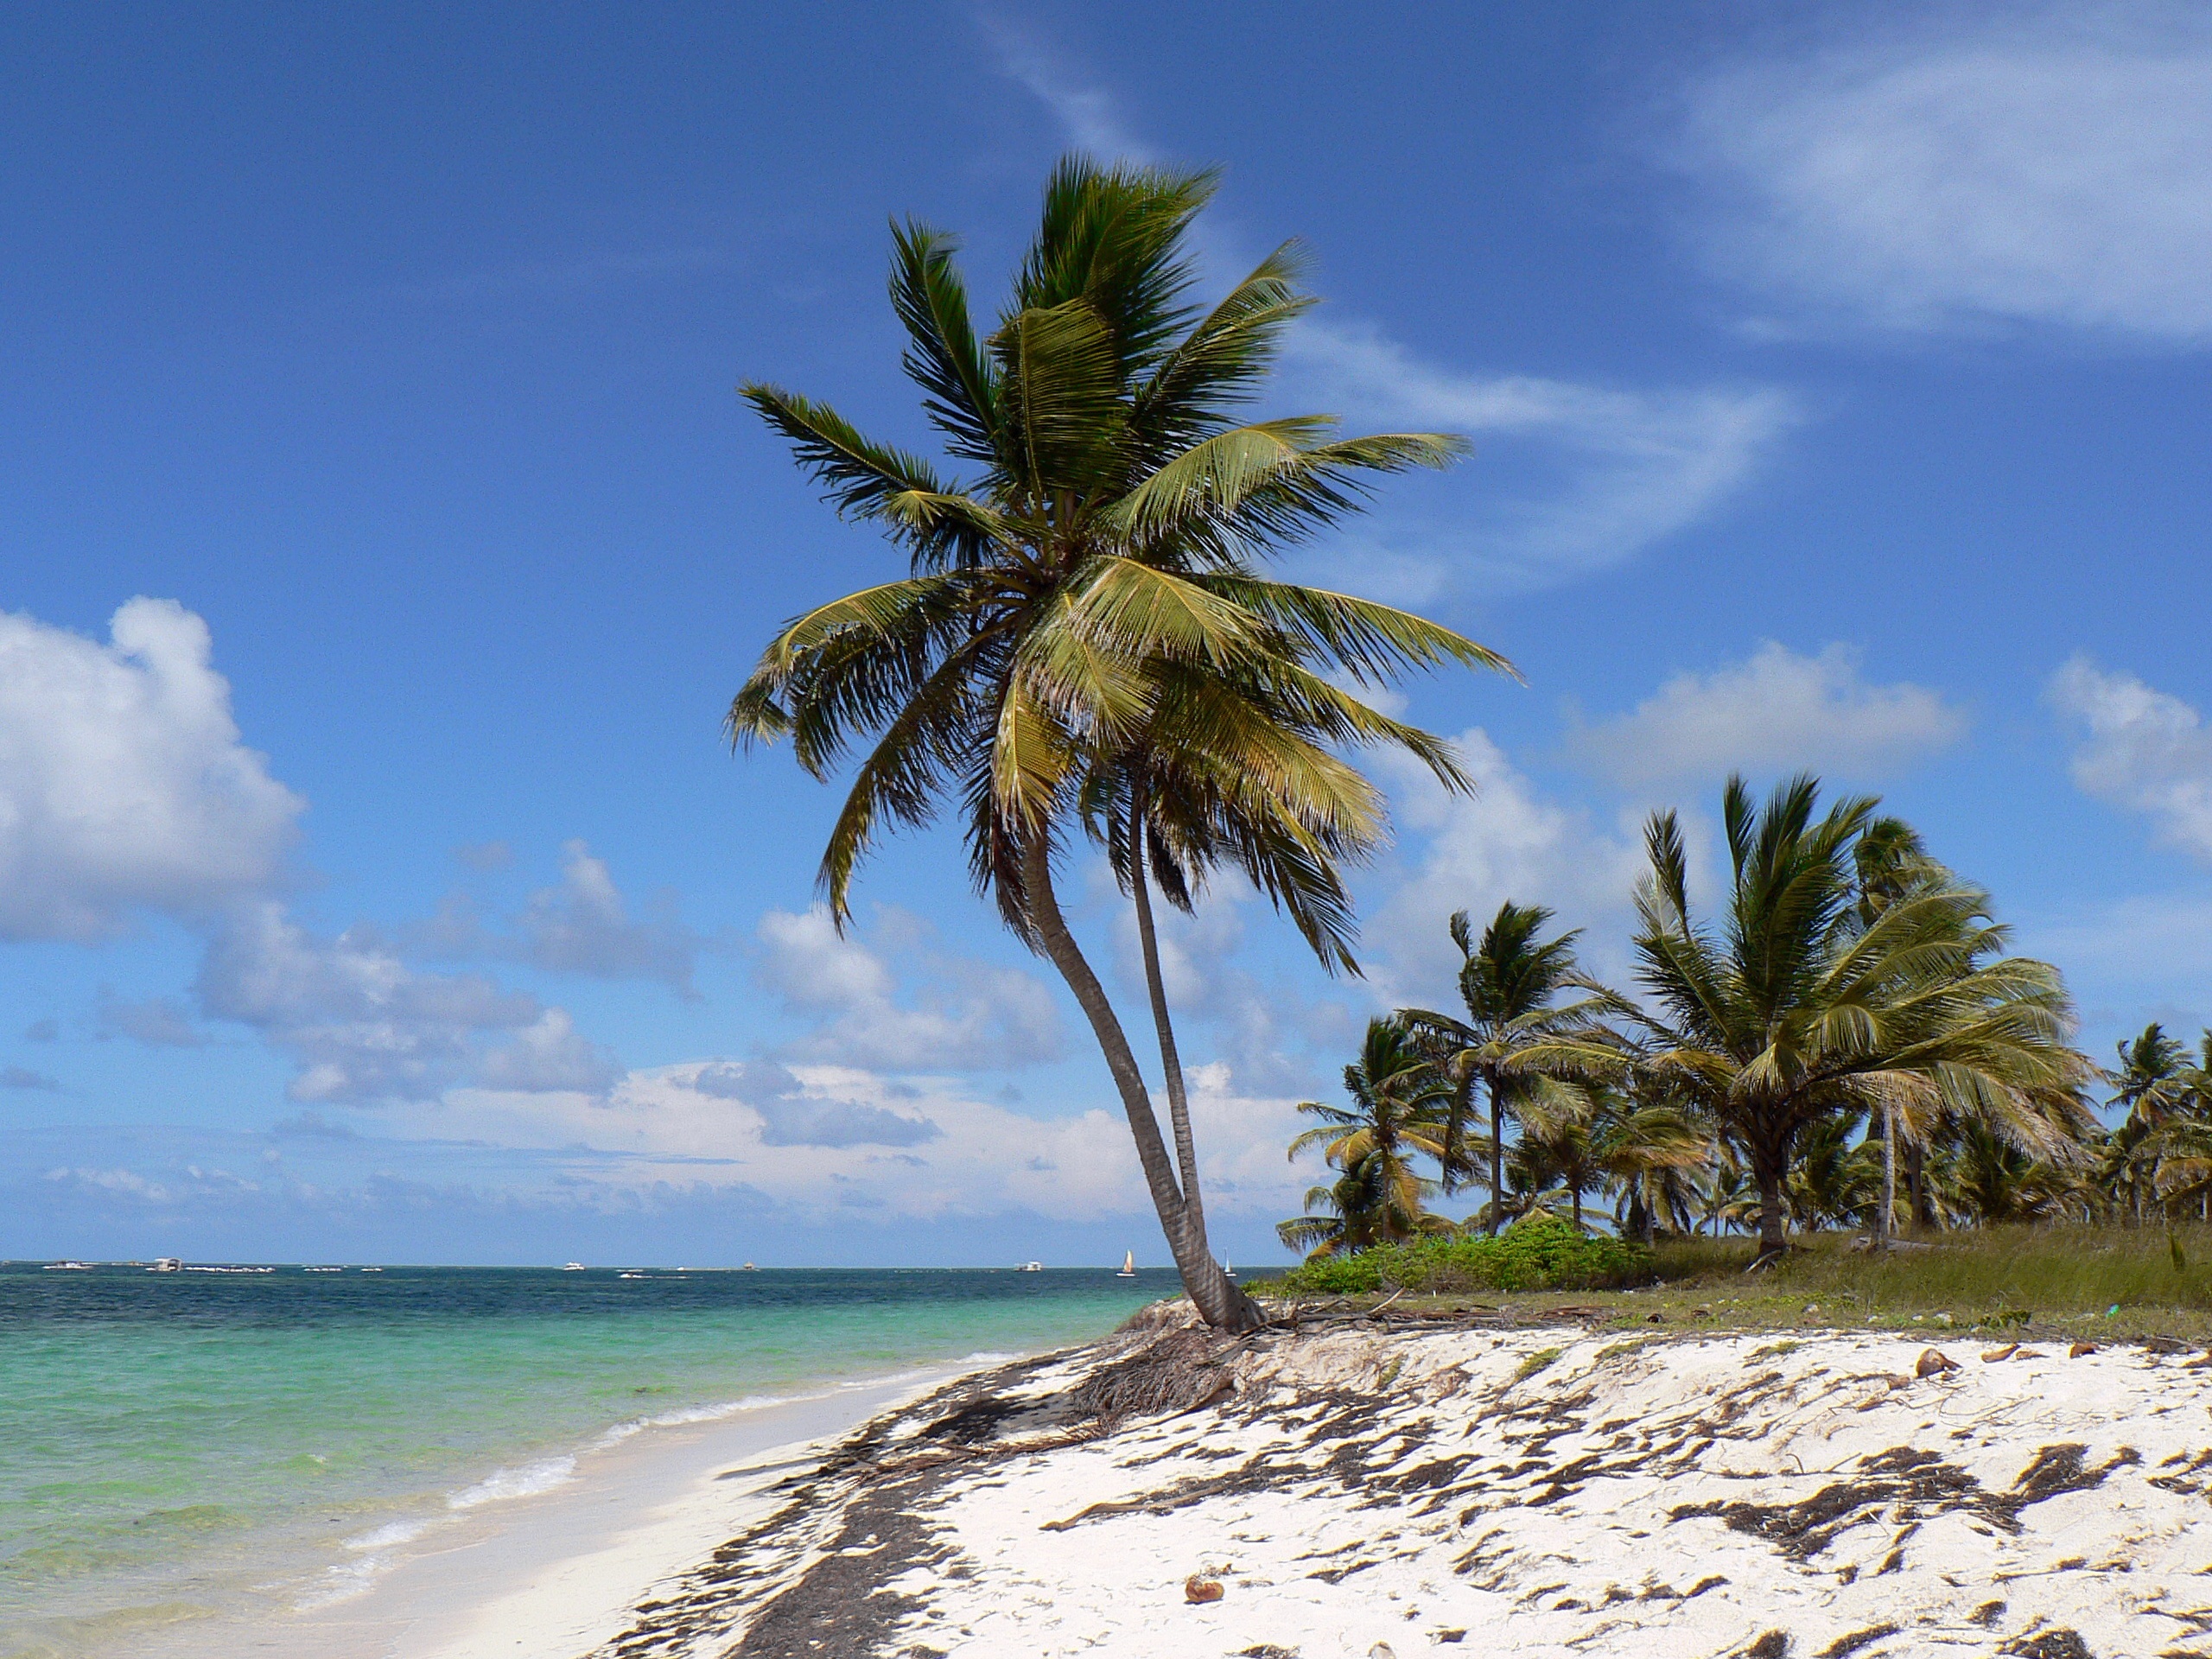 Фото рай, тропики, пейзажи, пляж, берег, дерево, залив, доминиканская республика, море, ареалы, отпуск, Пунта-Кана, растение, океан, водоём - бесплатные картинки на Fonwall